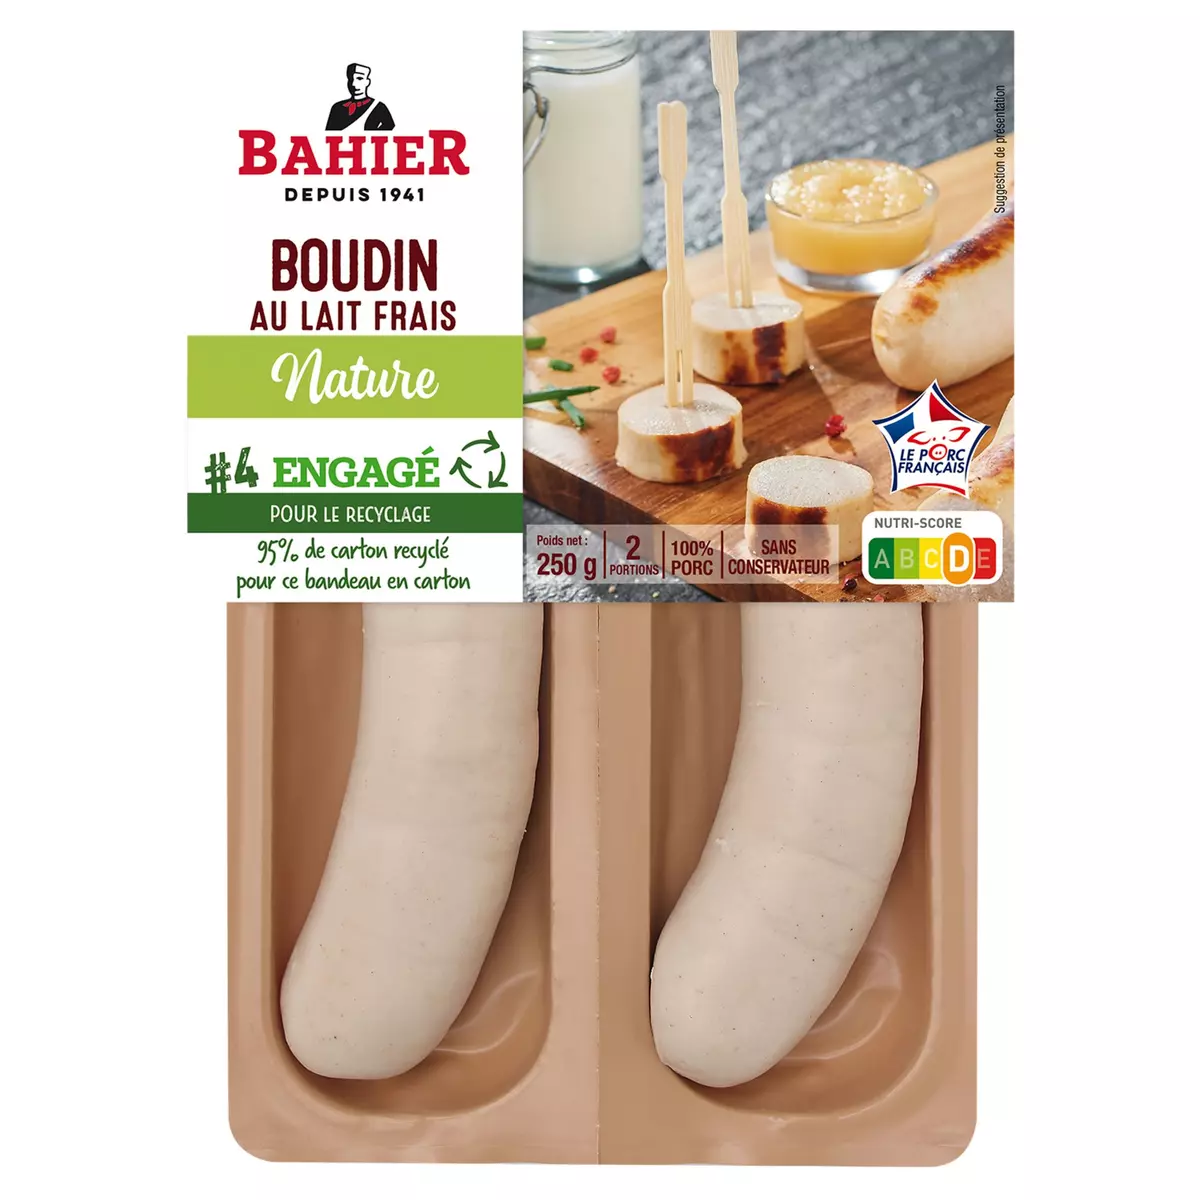 BAHIER Boudin nature au lait frais 2 pièces 250g